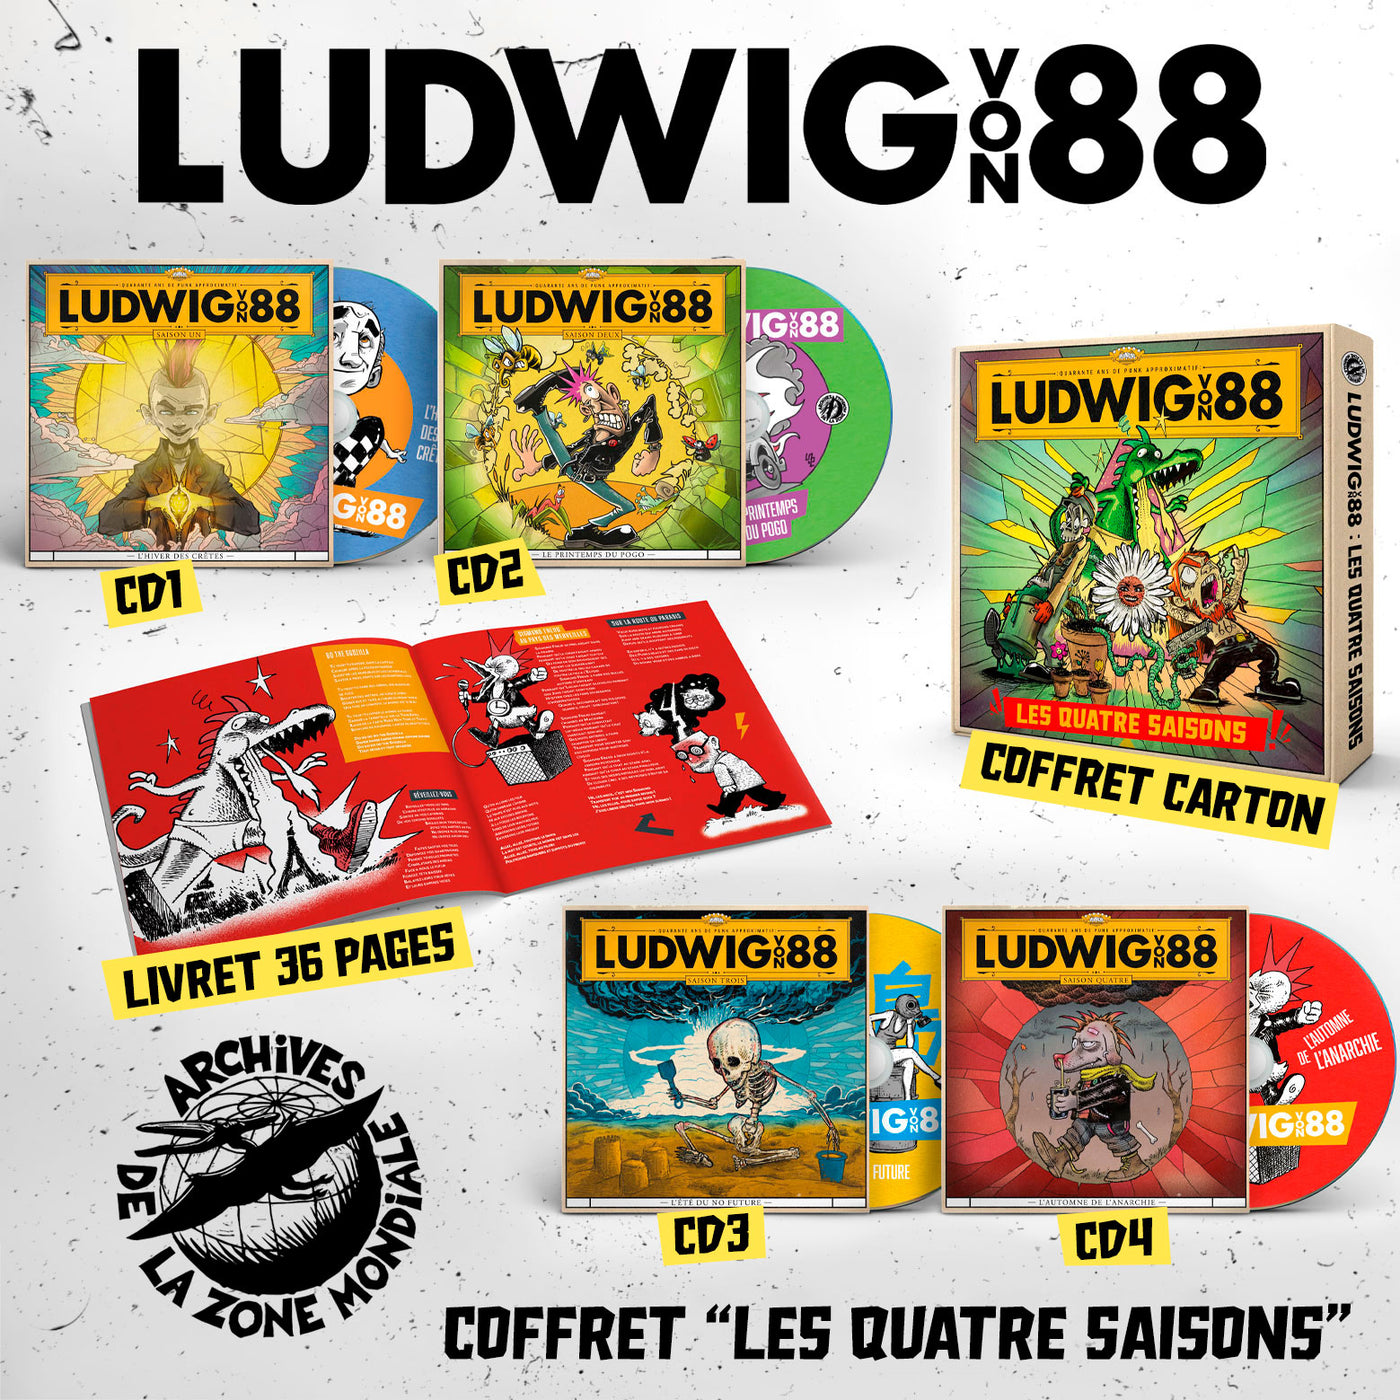 Ludwig Von 88 - Les quatre saisons [coffret]